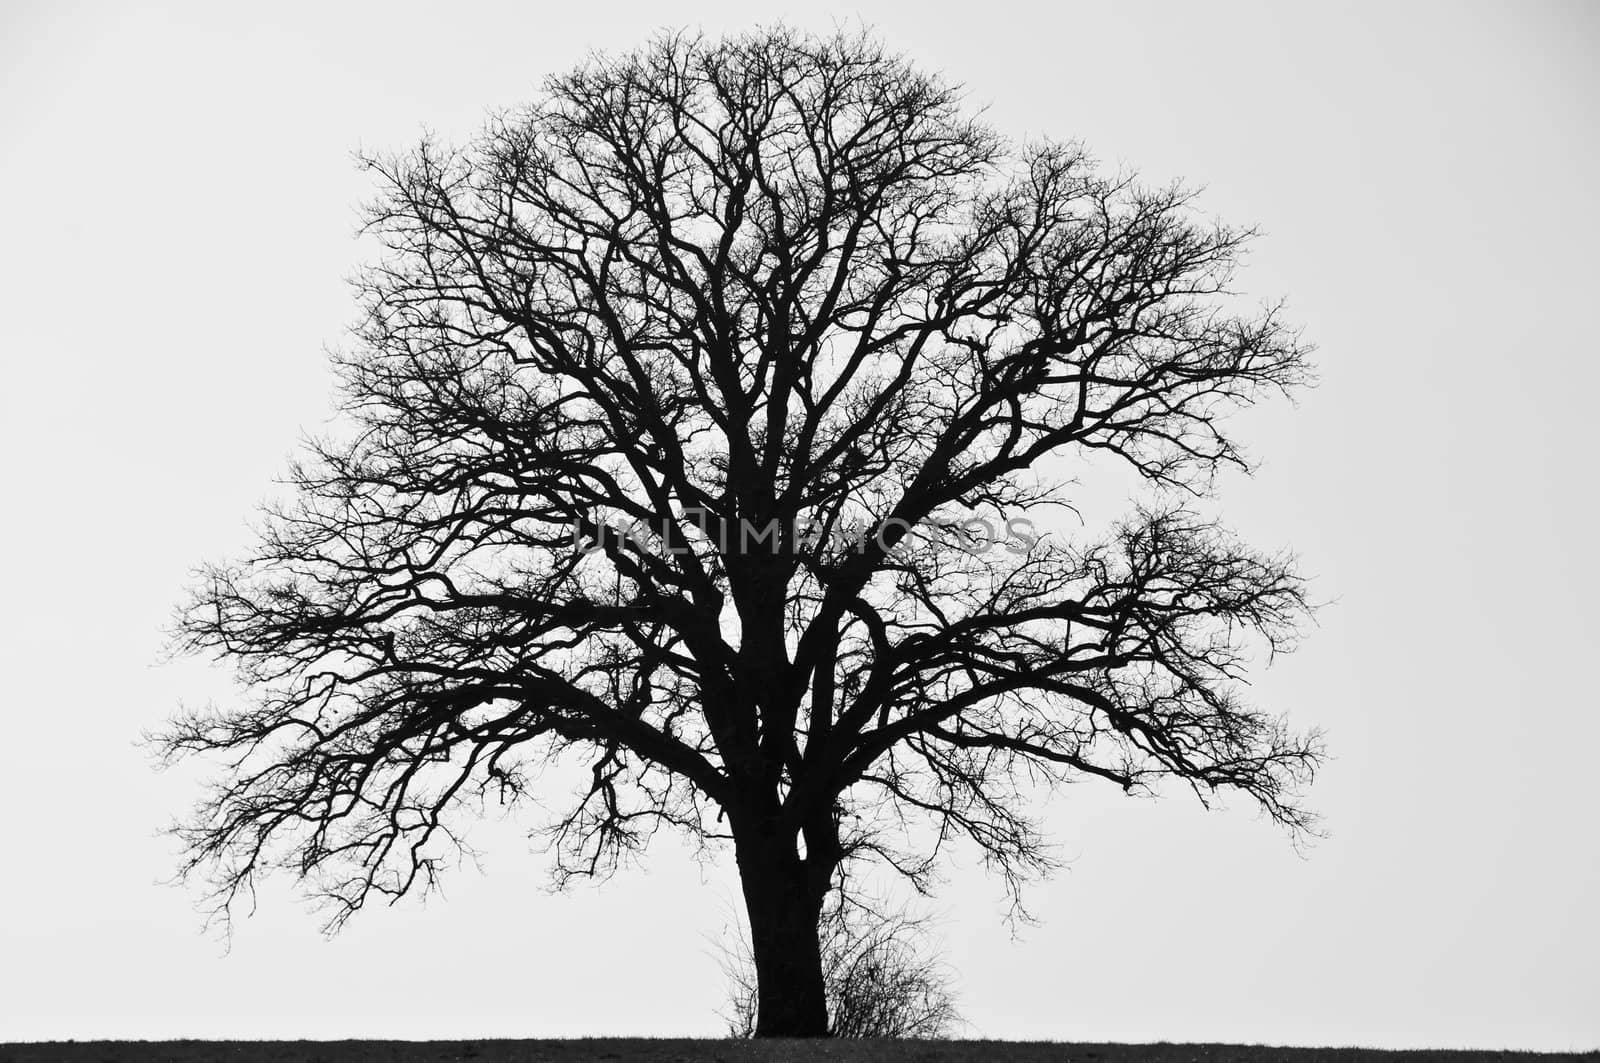 tree in wintertime by Jochen